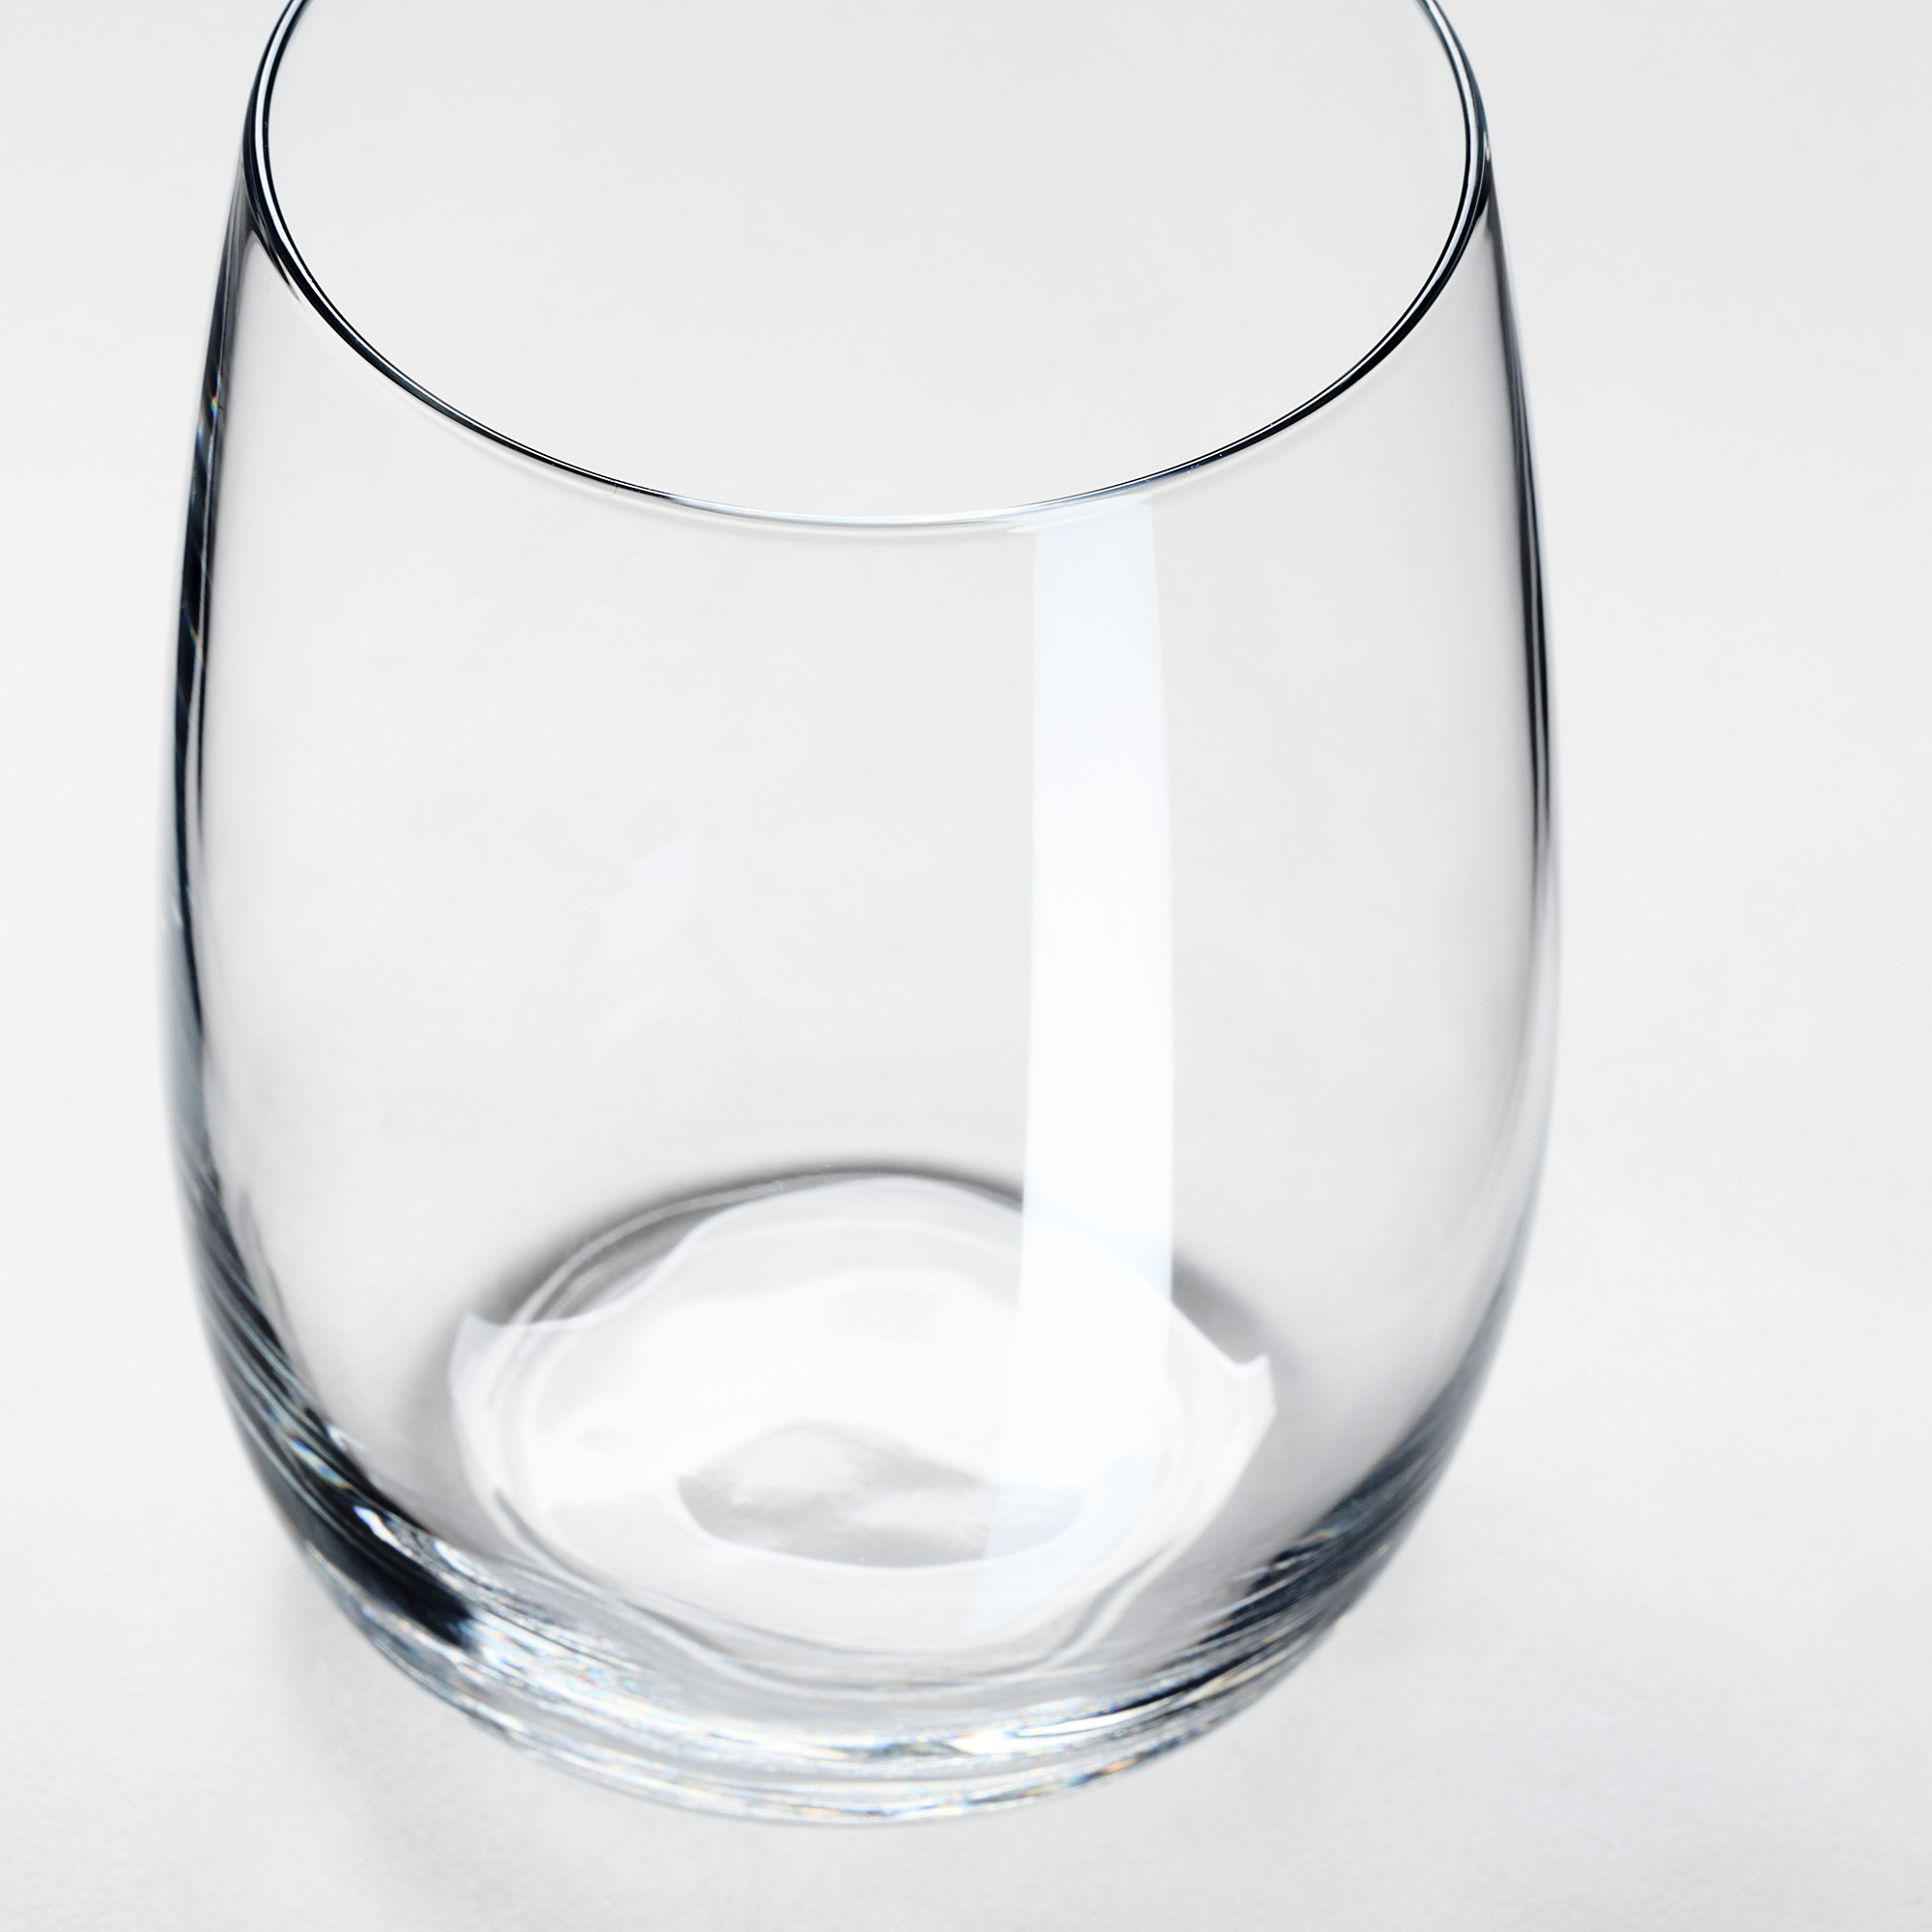 Почему стакан прозрачный. Ikea storsint бокал. Storsint сторсинт стакан, прозрачное стекло 37 сл. Сторсинт стаканы икеа. Сторсинт бокалы икеа.